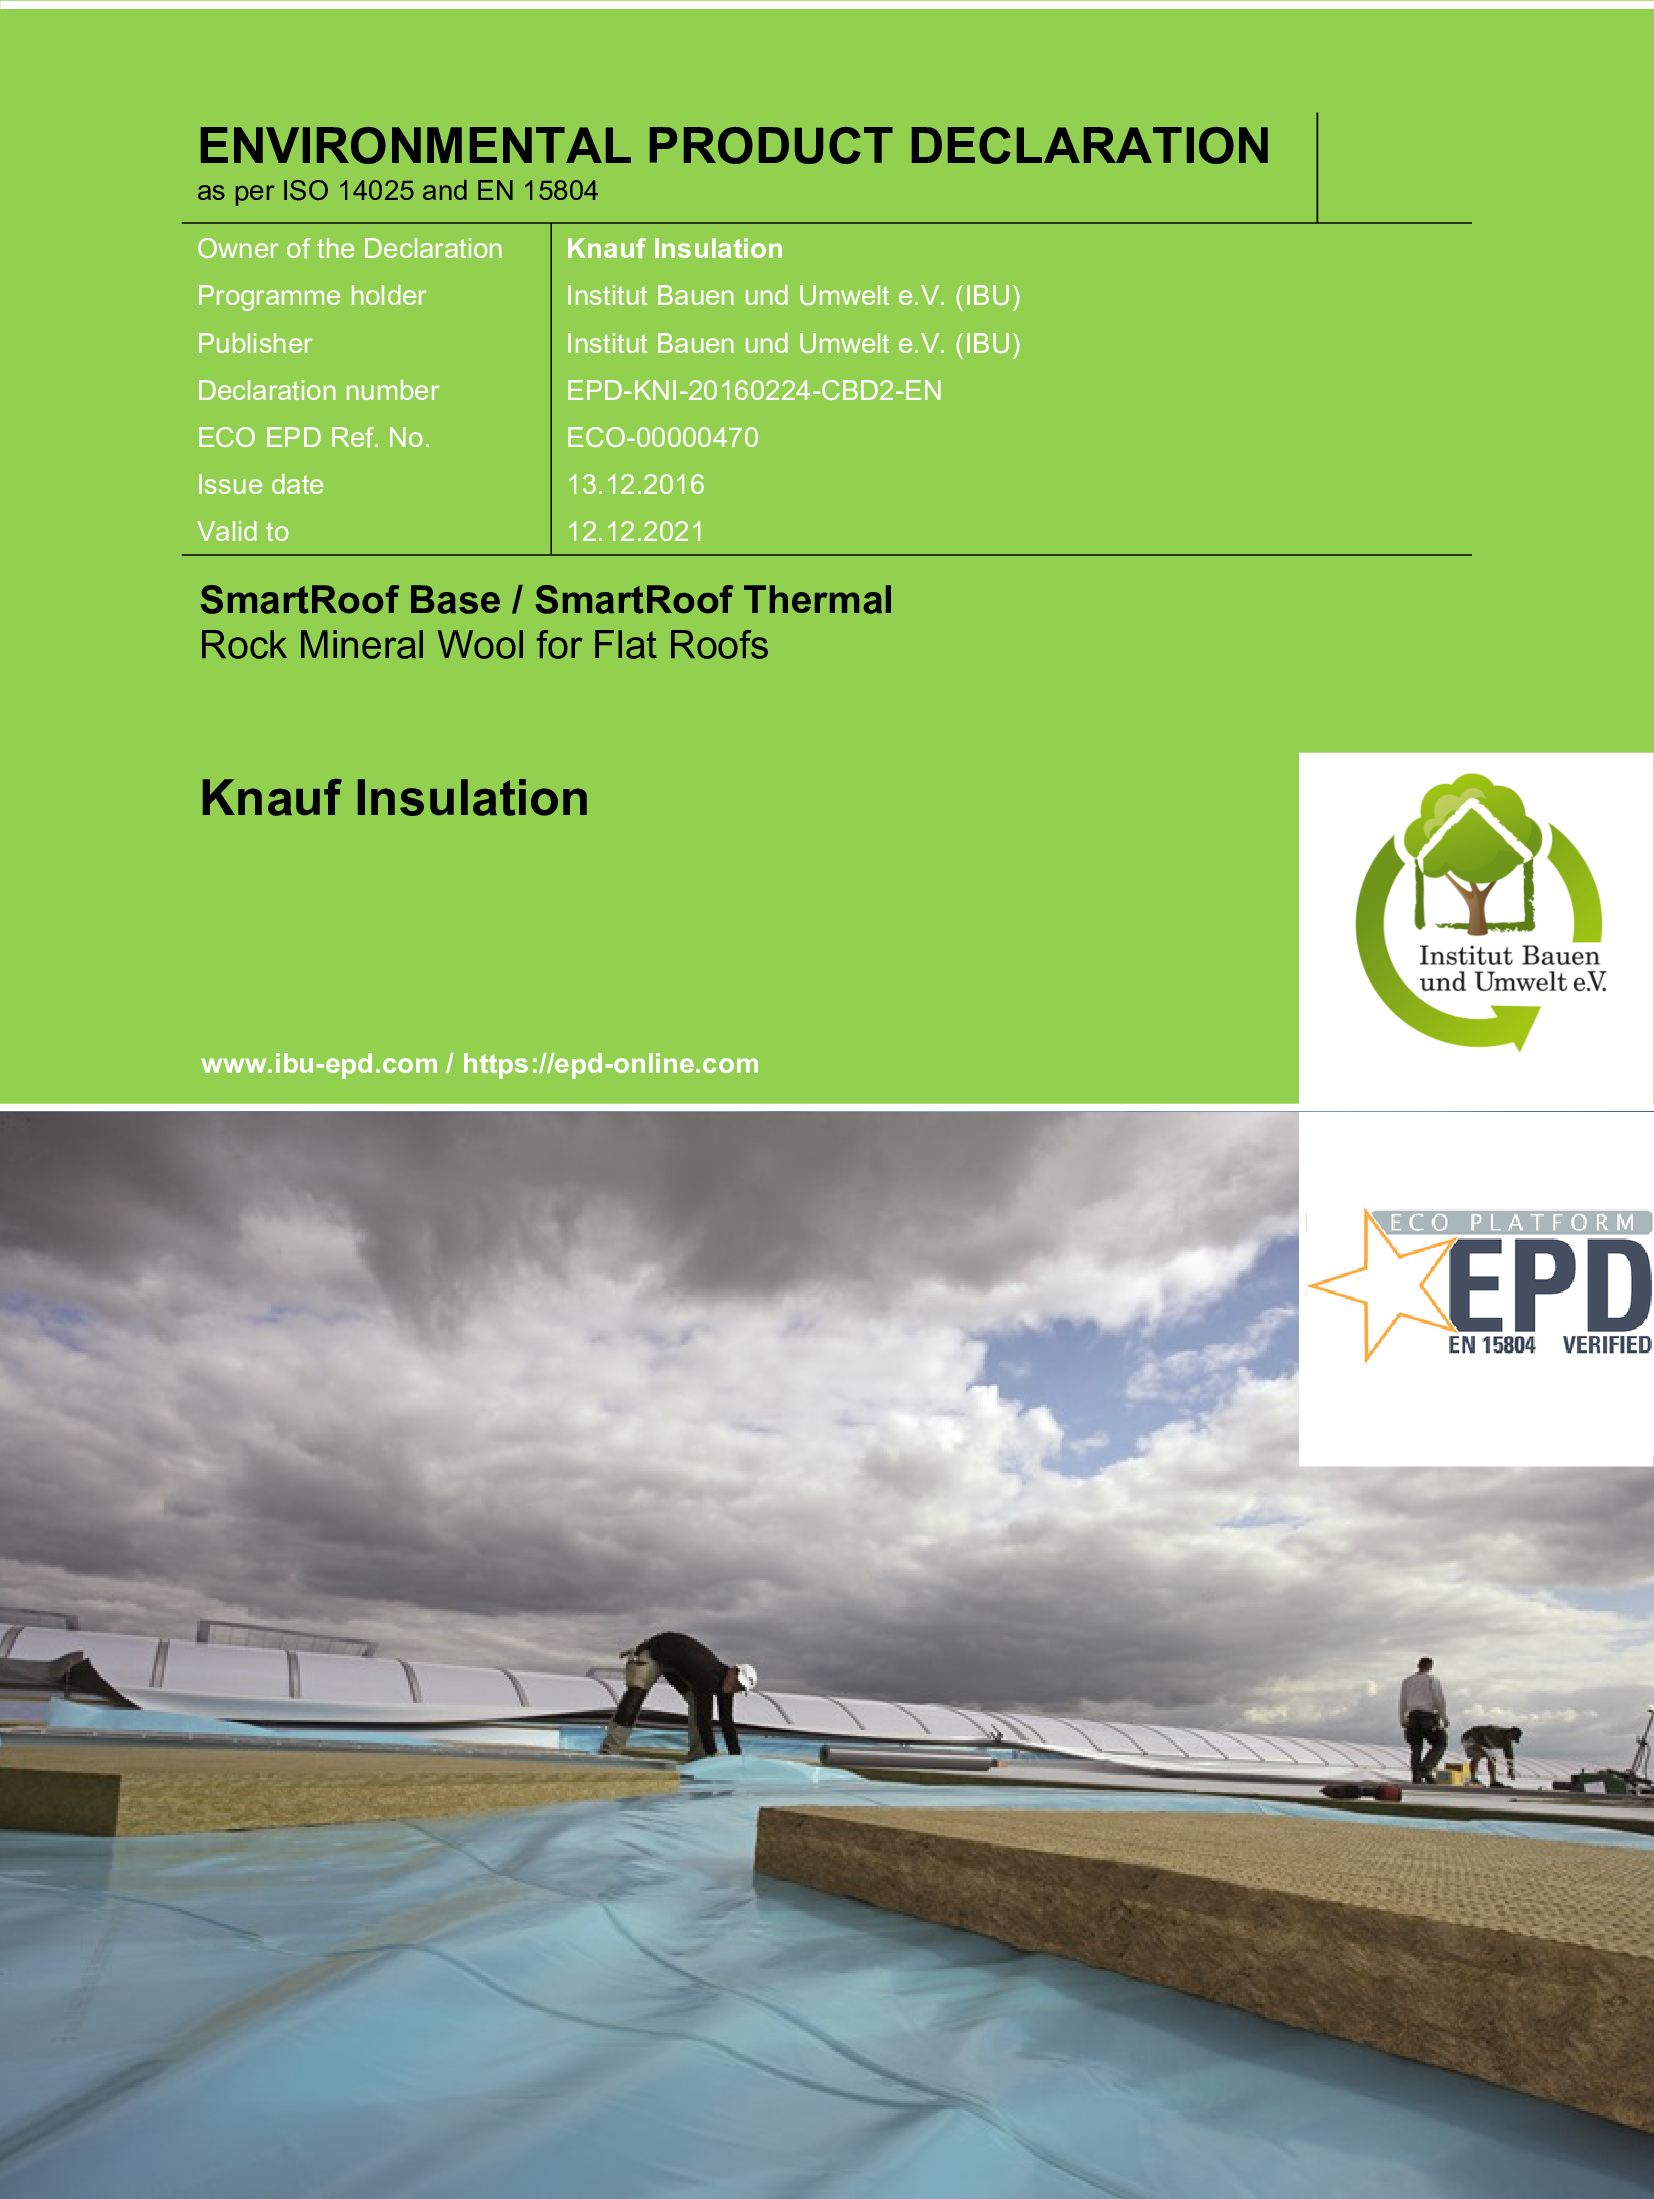 Enviromentální prohlášení o produktu (EPD) - SmartRoof Base, SmartRoof Thermal